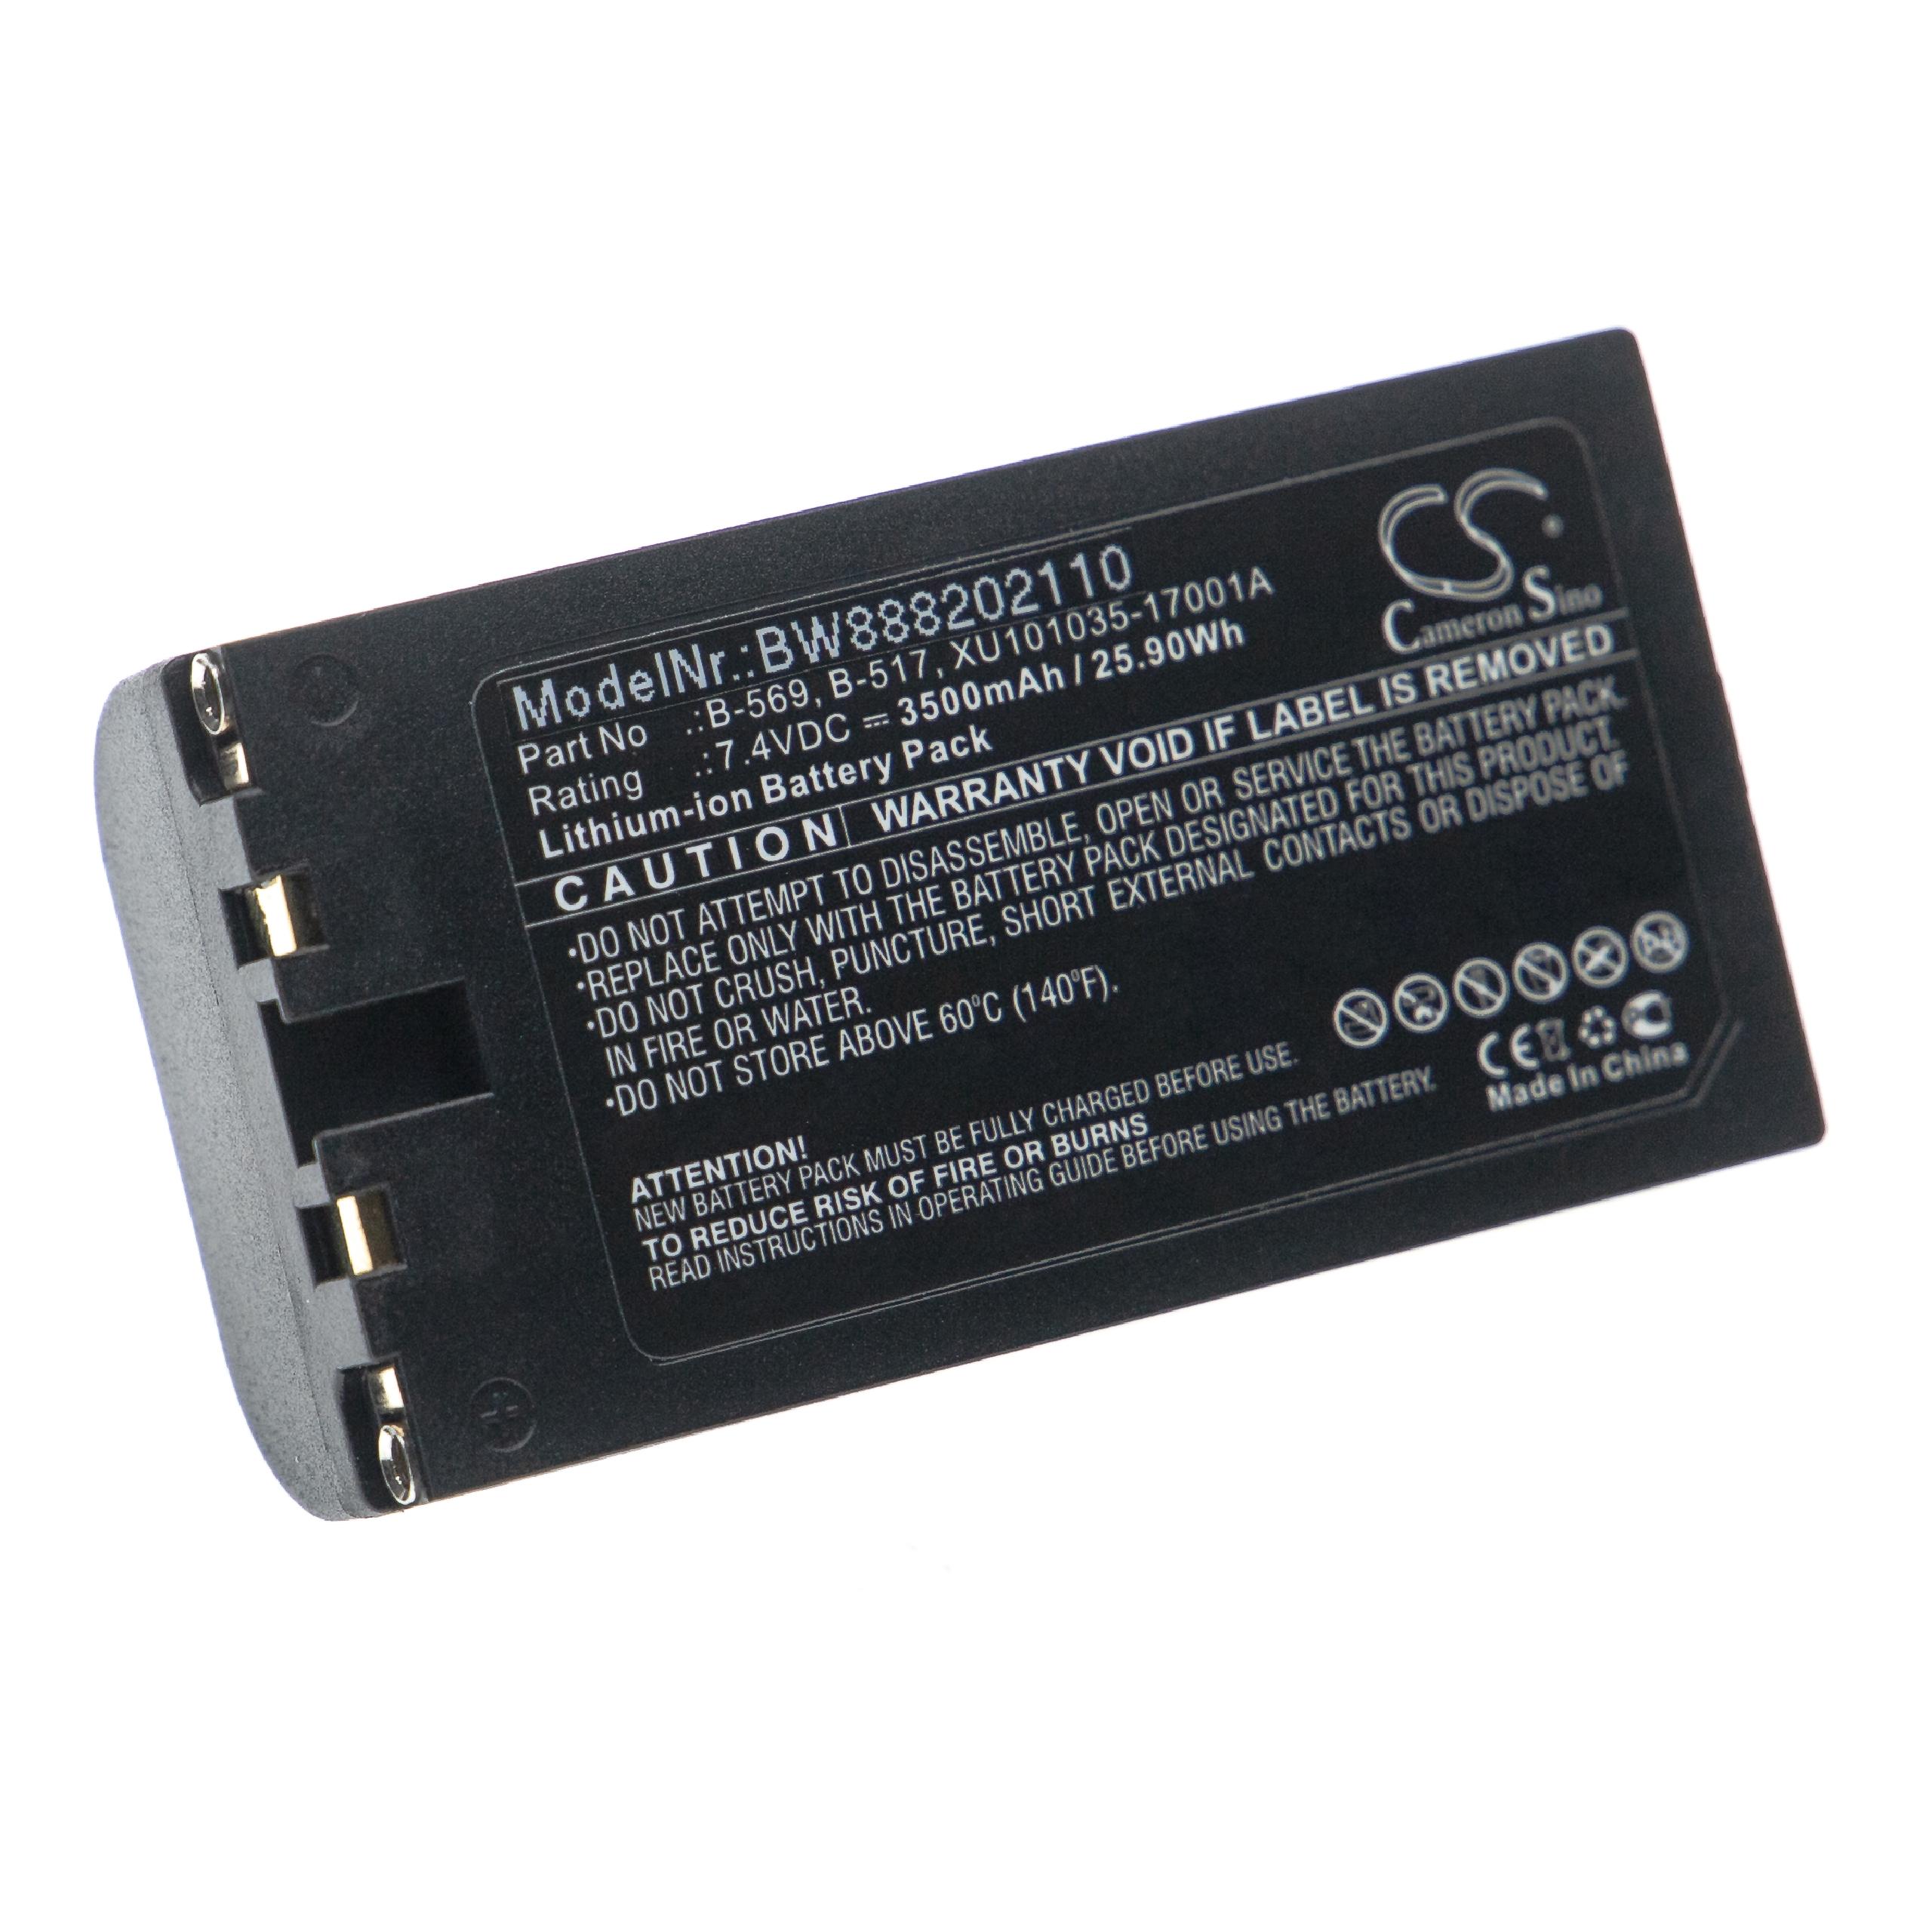 Batterie remplace Graphtec XU101035-17001A, B-569, B-517 pour outil de mesure - 3500mAh 7,4V Li-ion